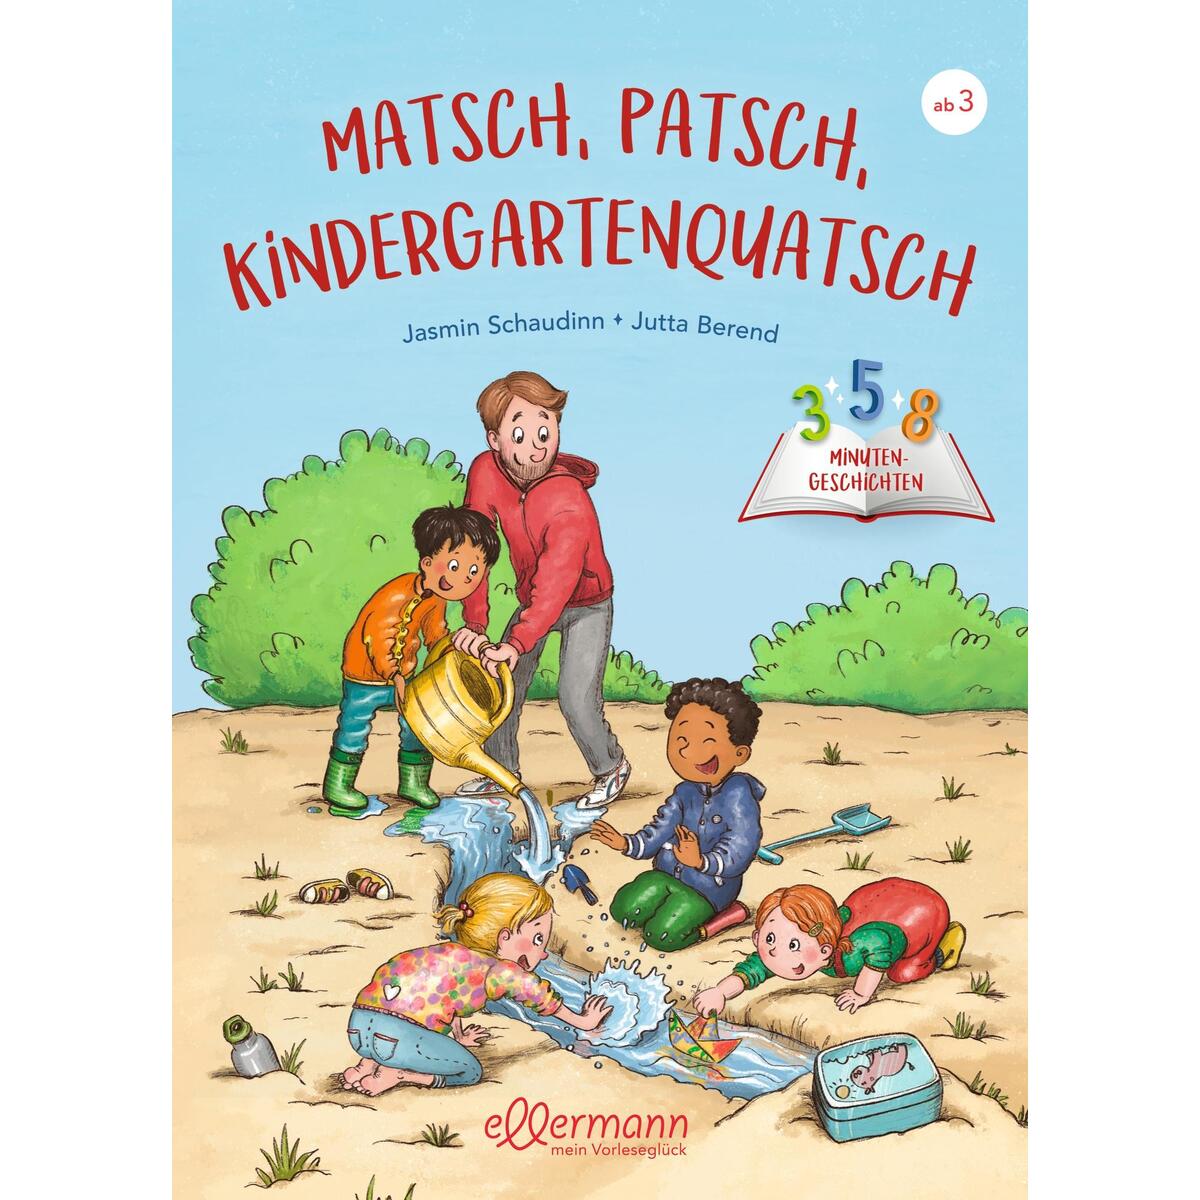 3-5-8 Minutengeschichten. Matsch, Patsch, Kindergartenquatsch von Ellermann